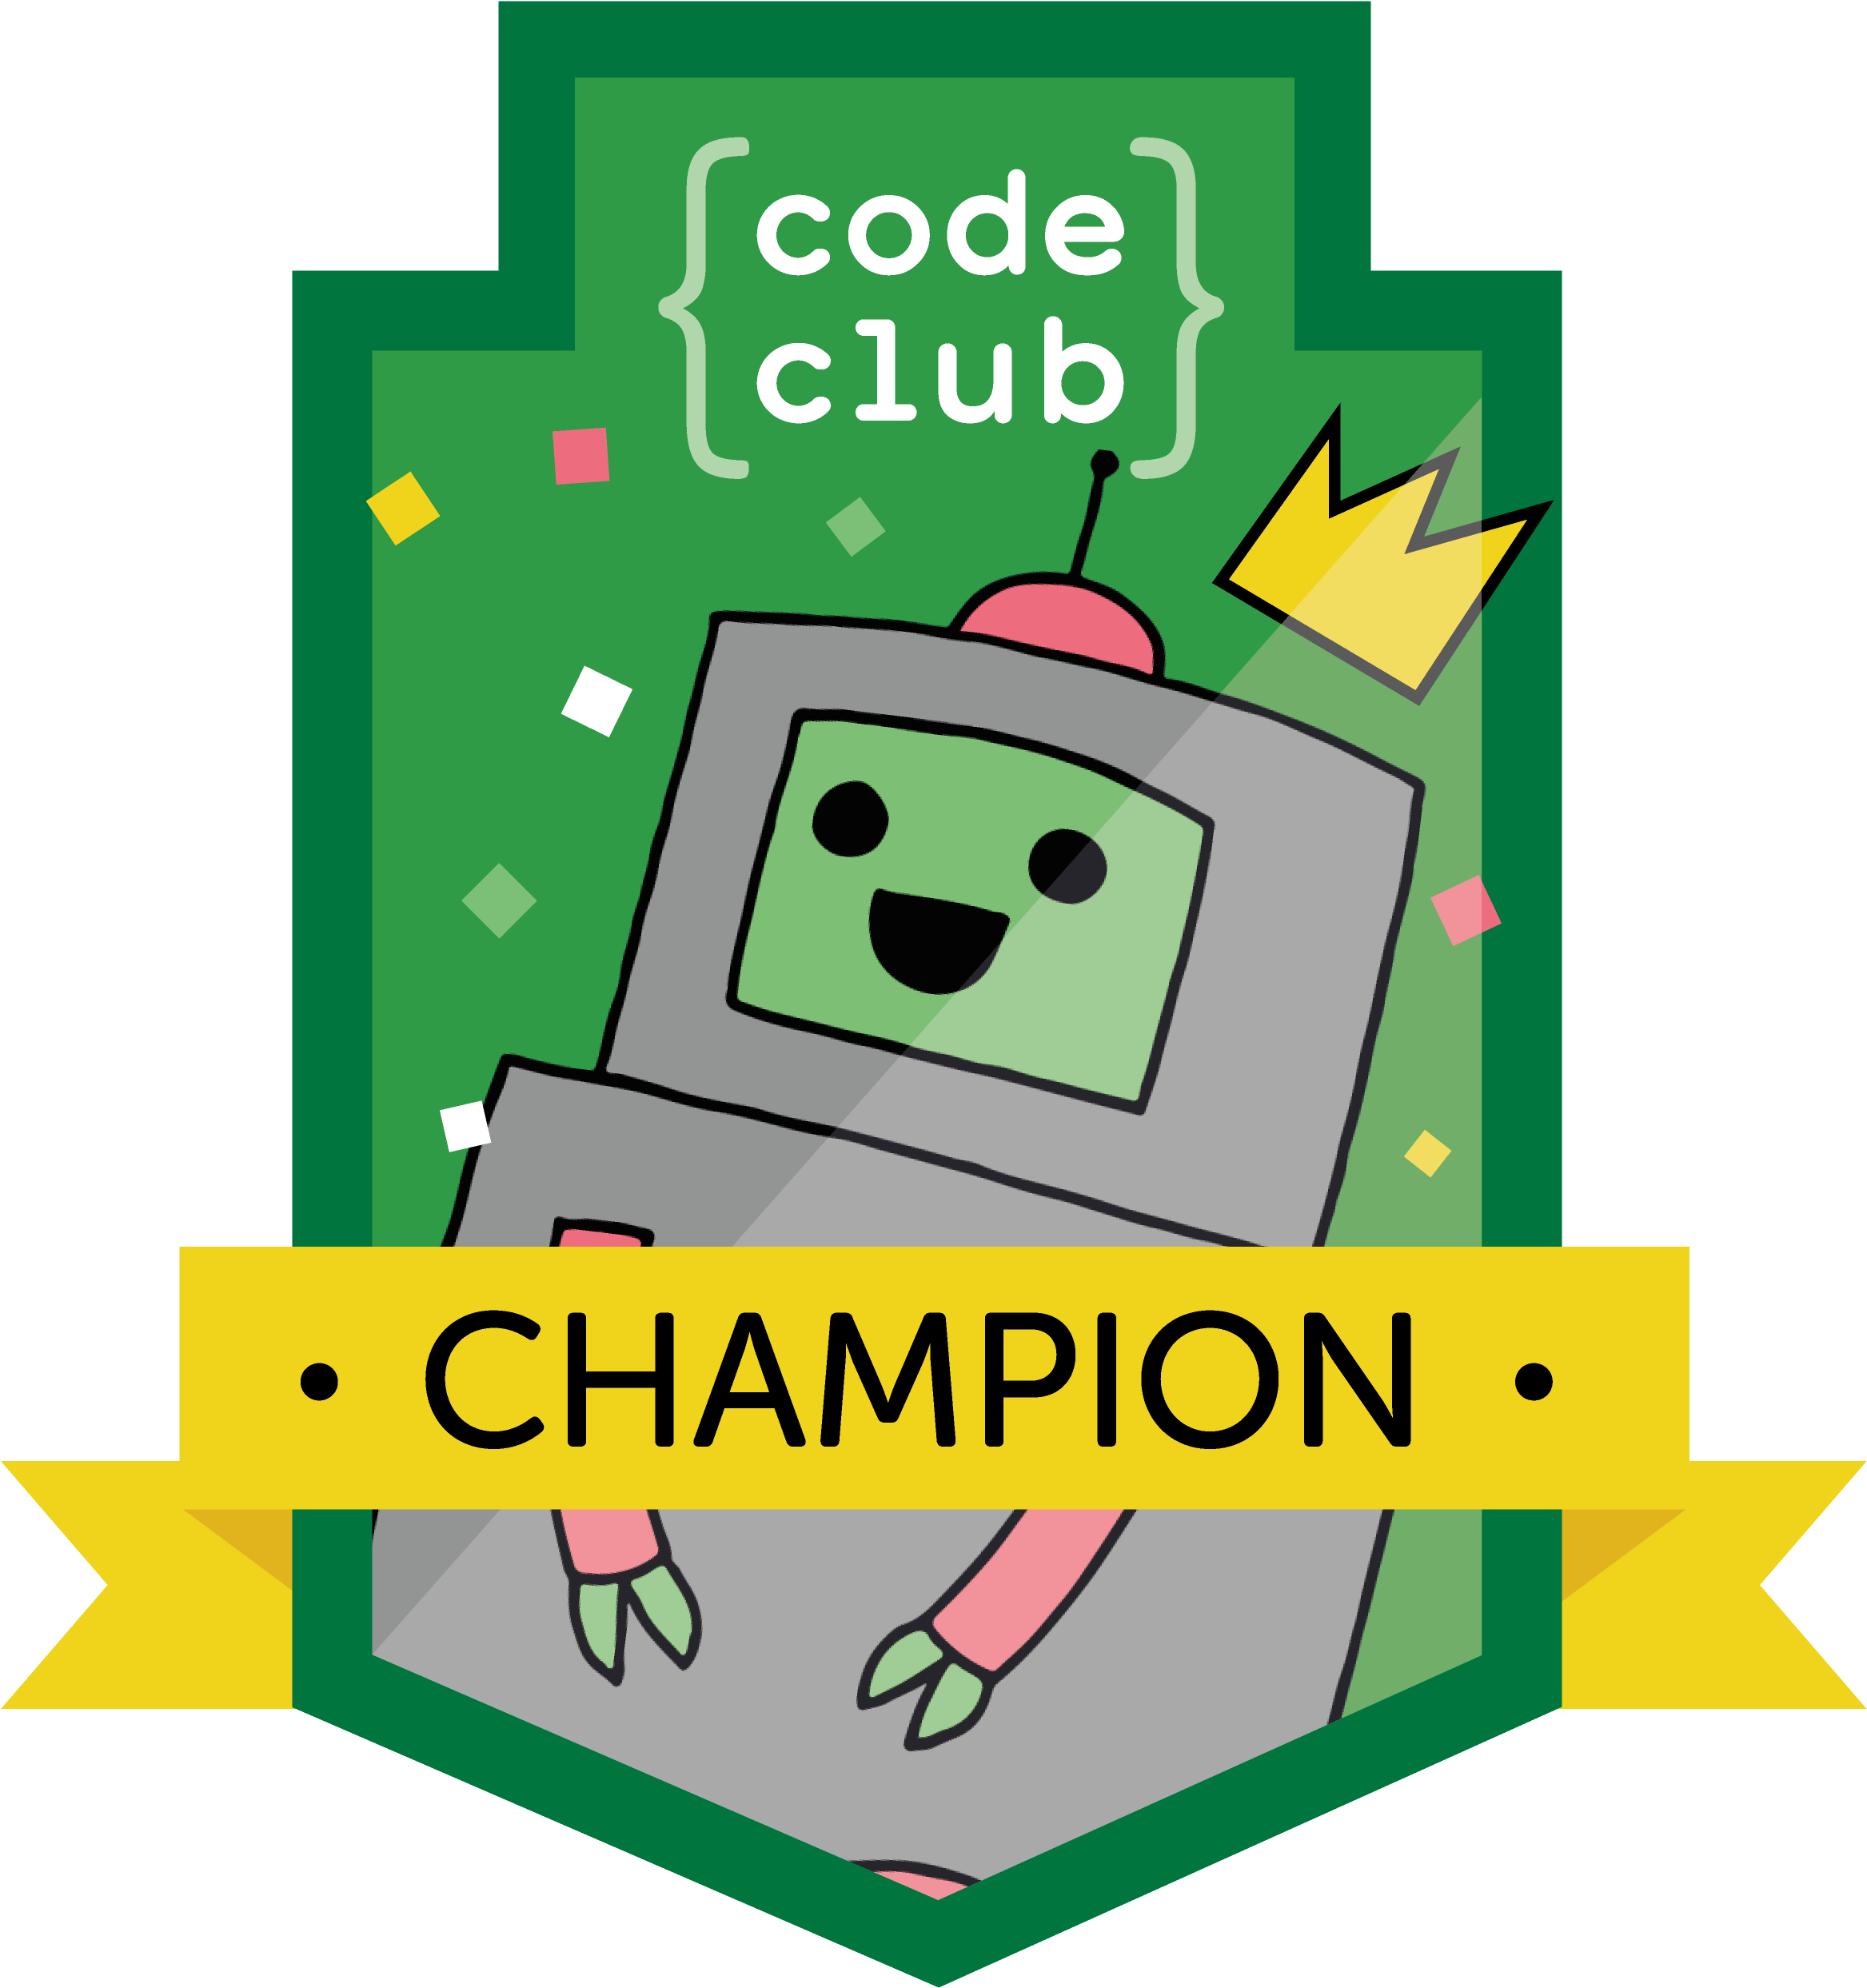 Code Club Champion Logo V1-01 - Code Club (4961x3508)